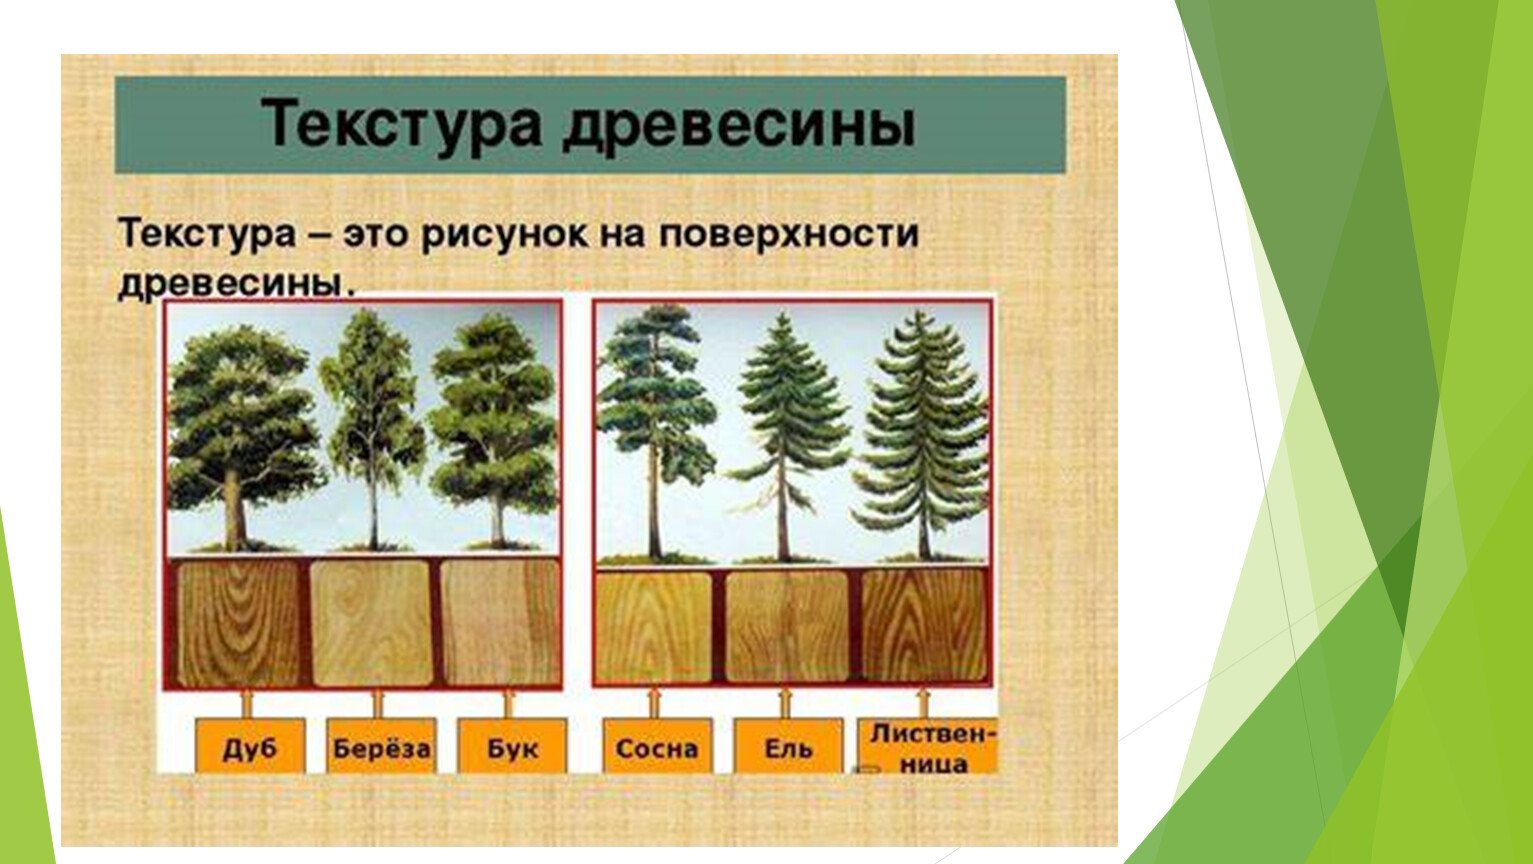 Хвойные породы характеристика. Образцы древесины. Лиственные породы древесины. Текстура лиственных пород древесины. Хвойные и лиственные породы деревьев.